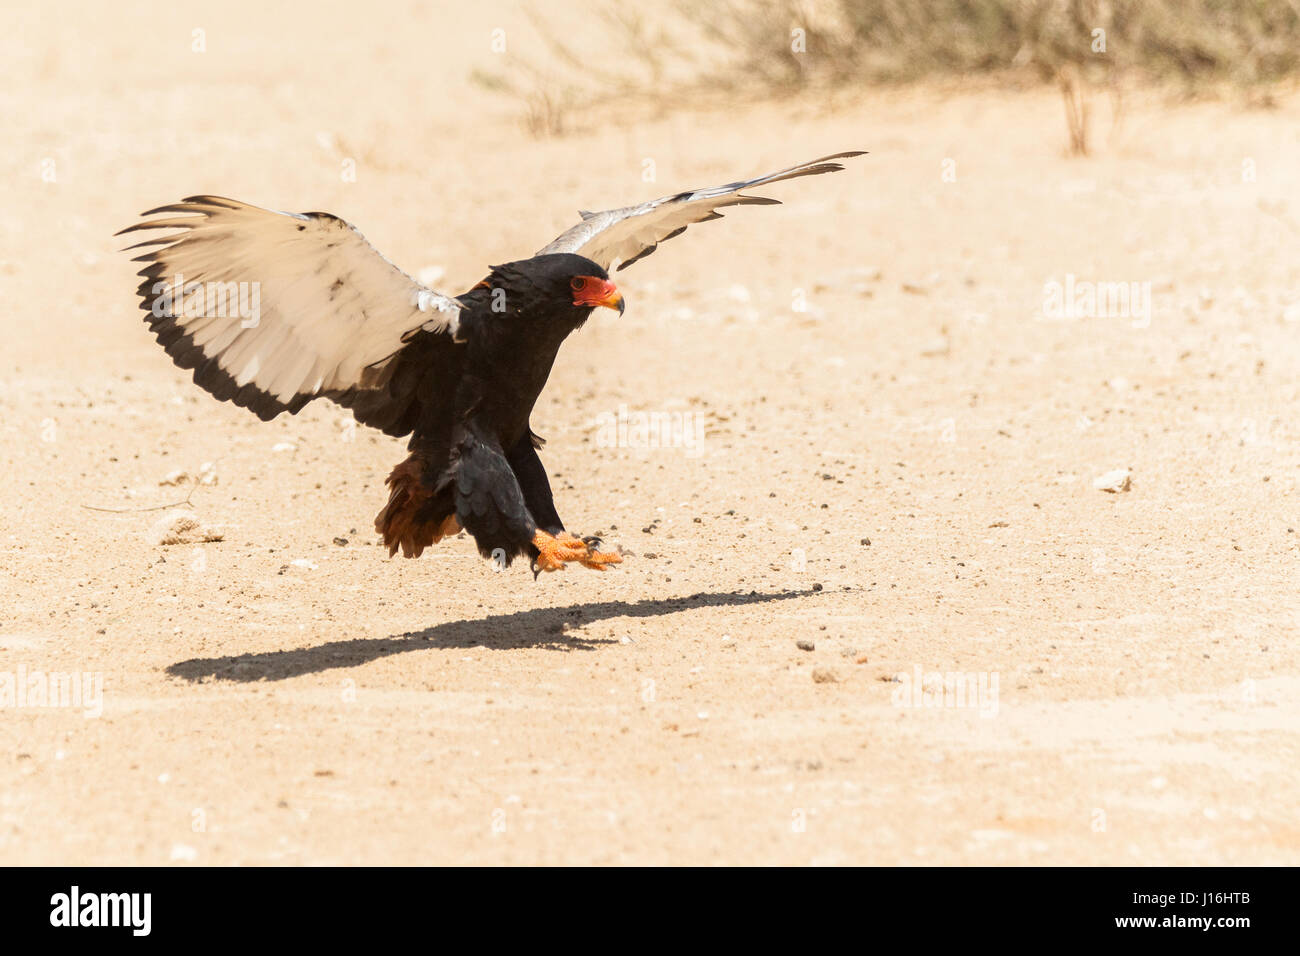 Bataleur Adler landen im Sand der Wüste im Kgalagadi Botswana Stockfoto